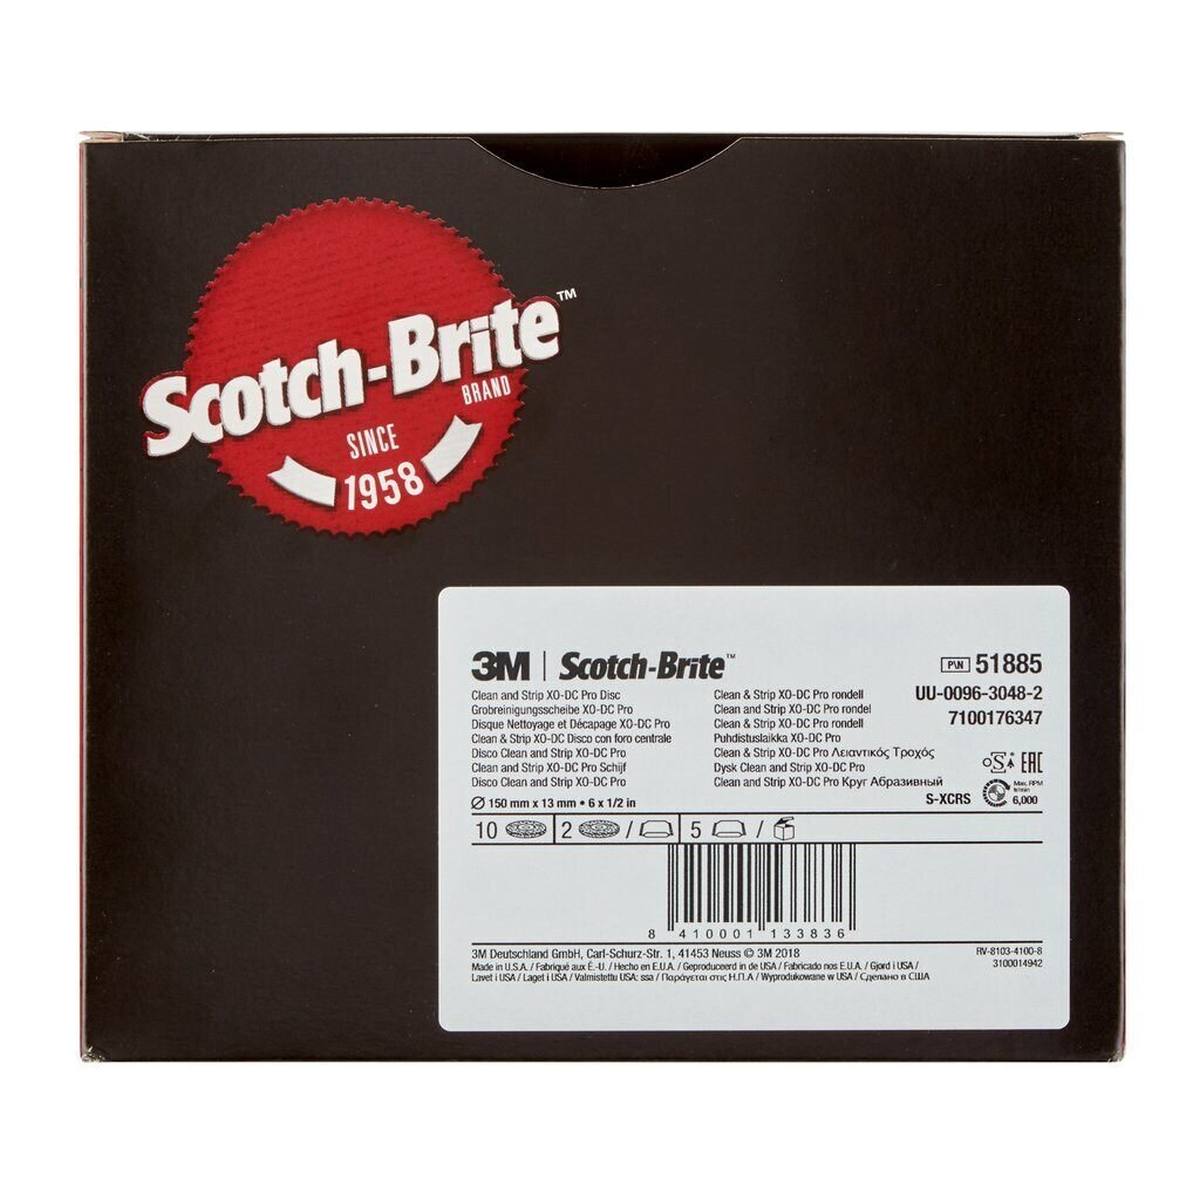 3M Scotch-Brite Disque de nettoyage grossier XT-DC Pro, 150 mm x 13 mm, S, extra coarse